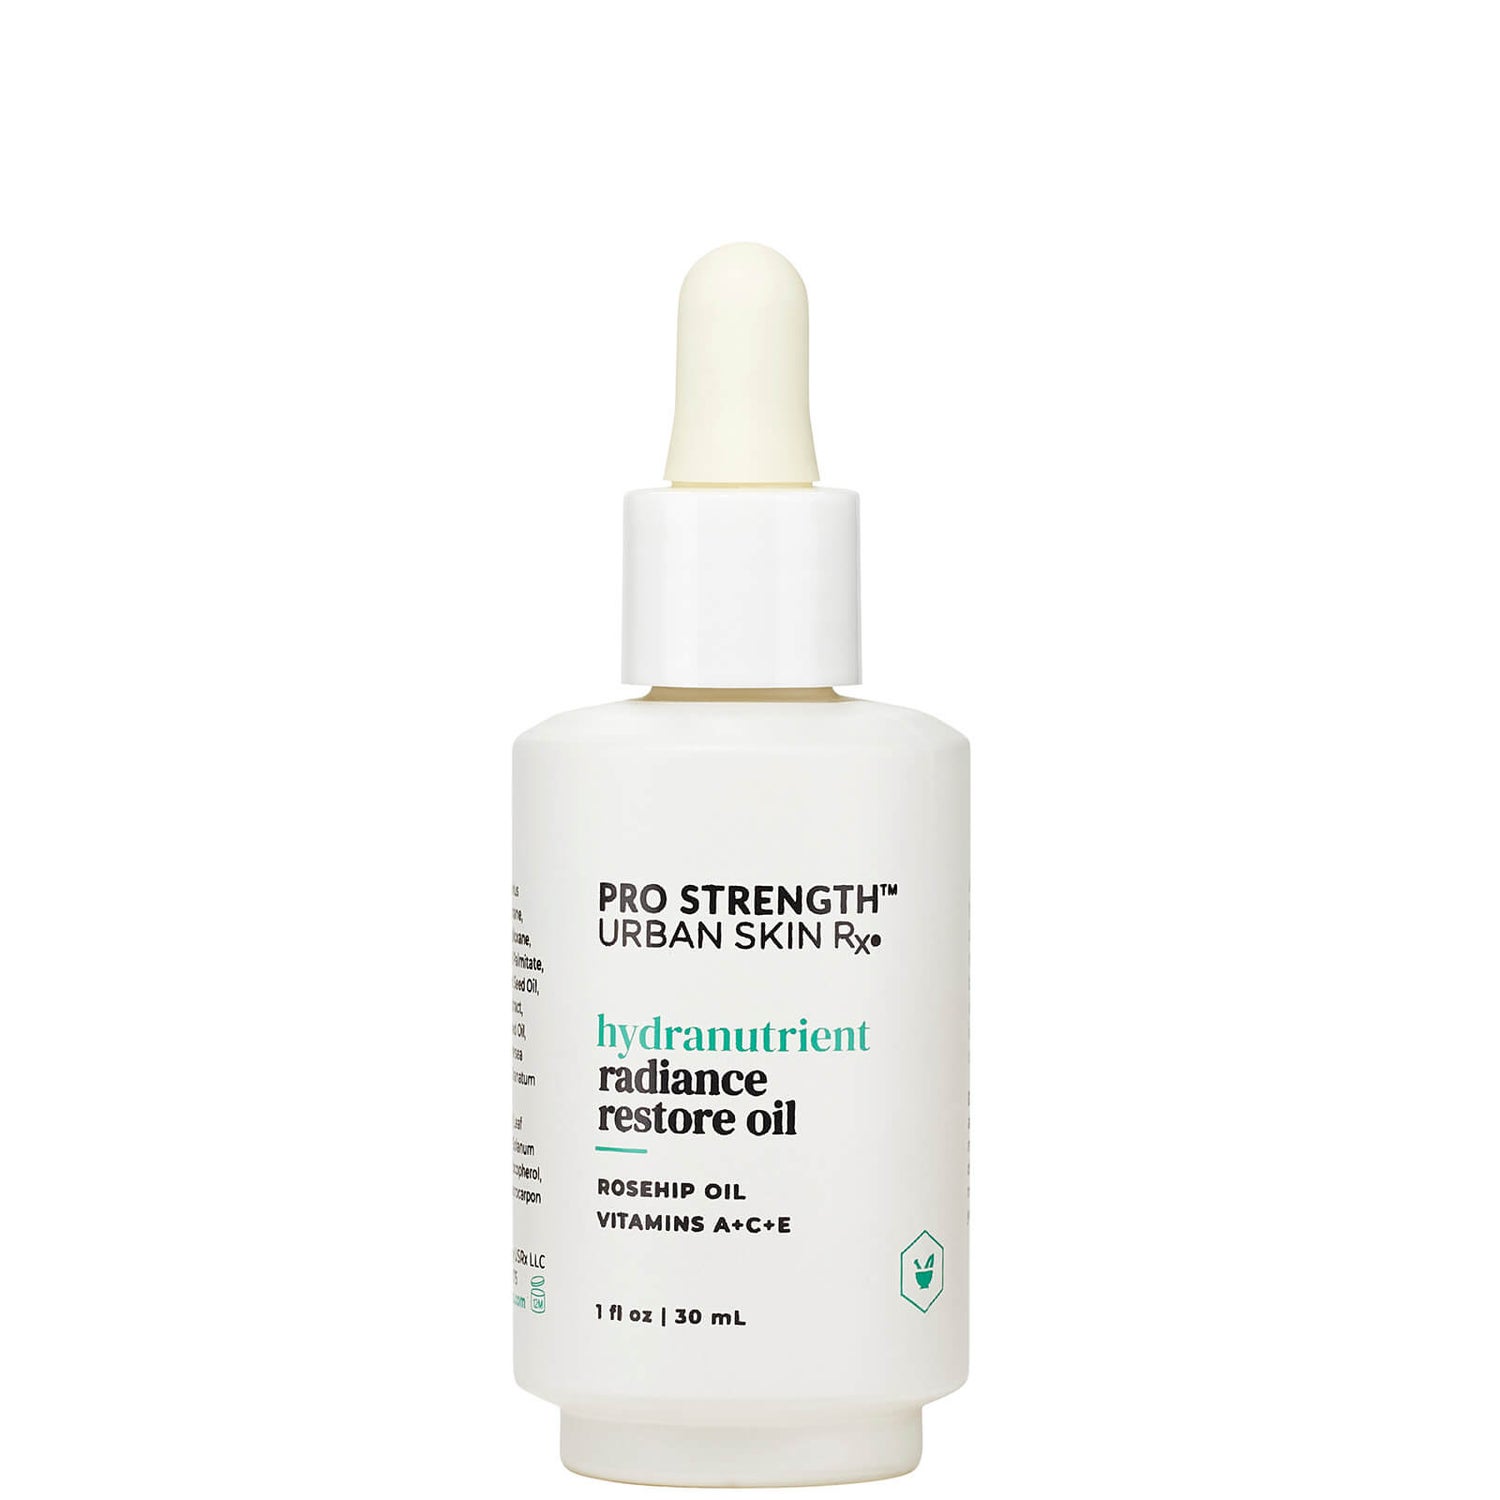 Urban Skin Rx Hydranutrient Radiance Restore Oil (1 fl. oz.)